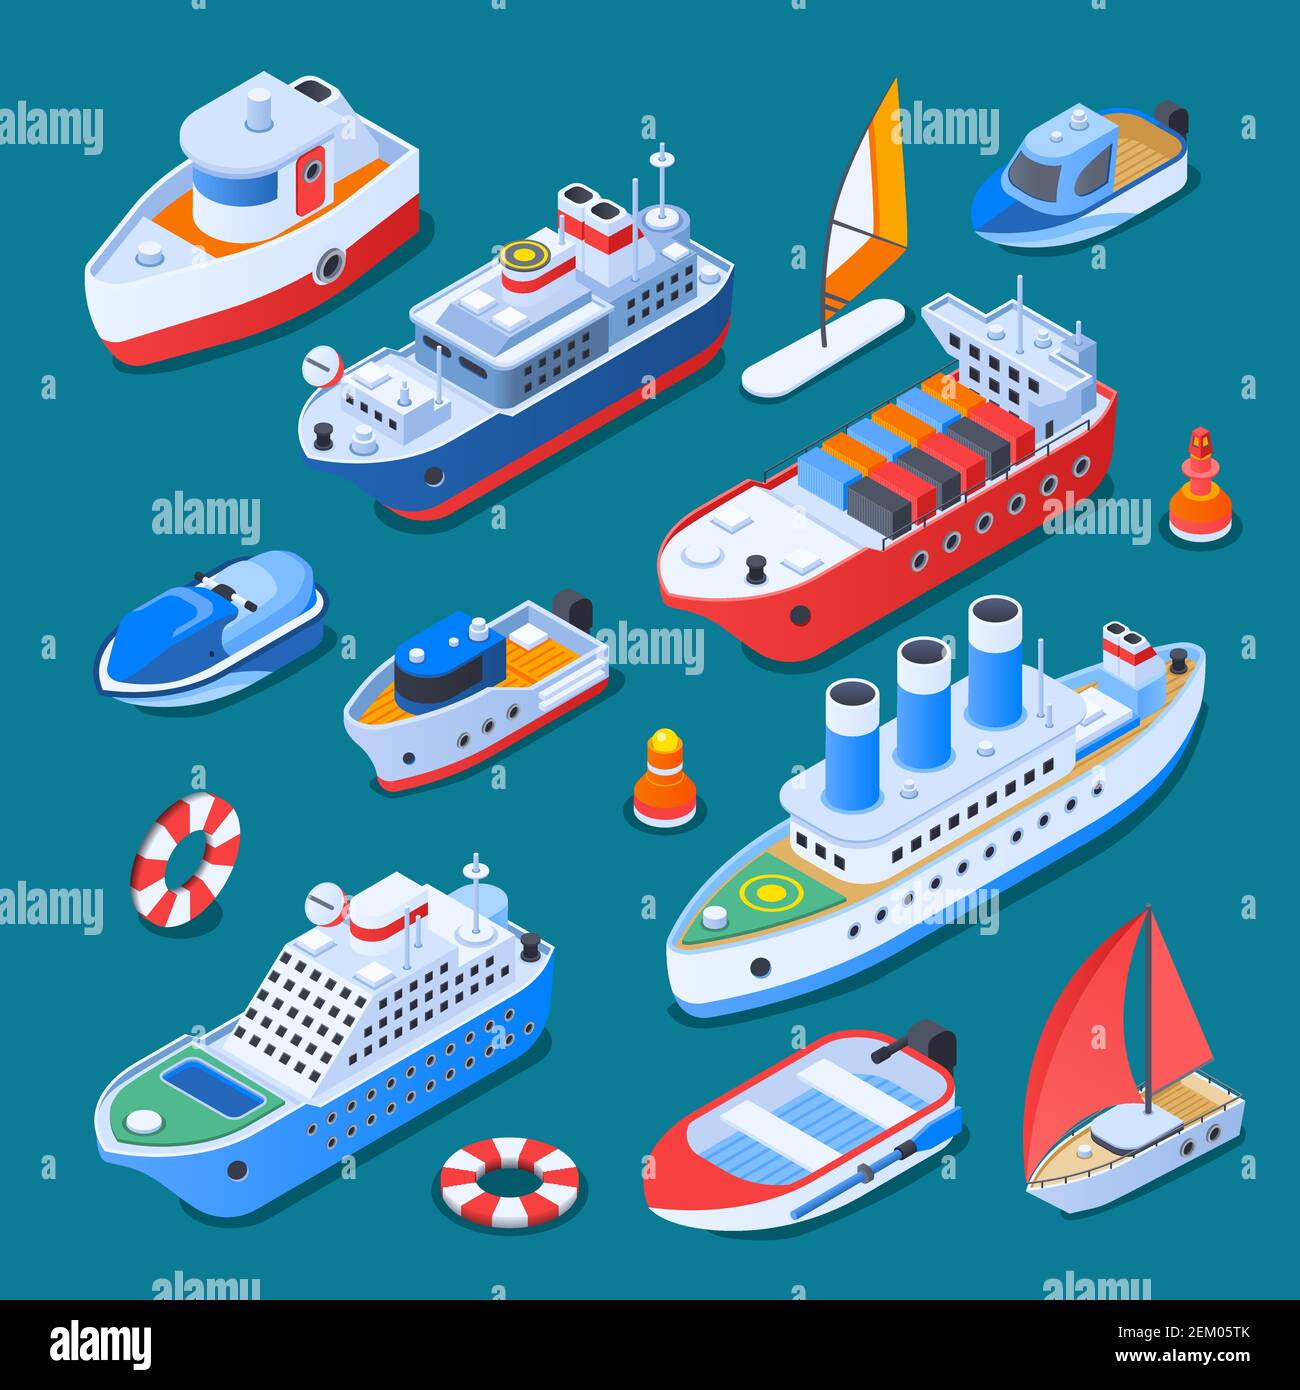 Barcos que incluyen barcos de vela, ferry, crucero, remolcador, pequeñas artesanías, iconos isométricos aislados en la ilustración vectorial de fondo turquesa Ilustración del Vector